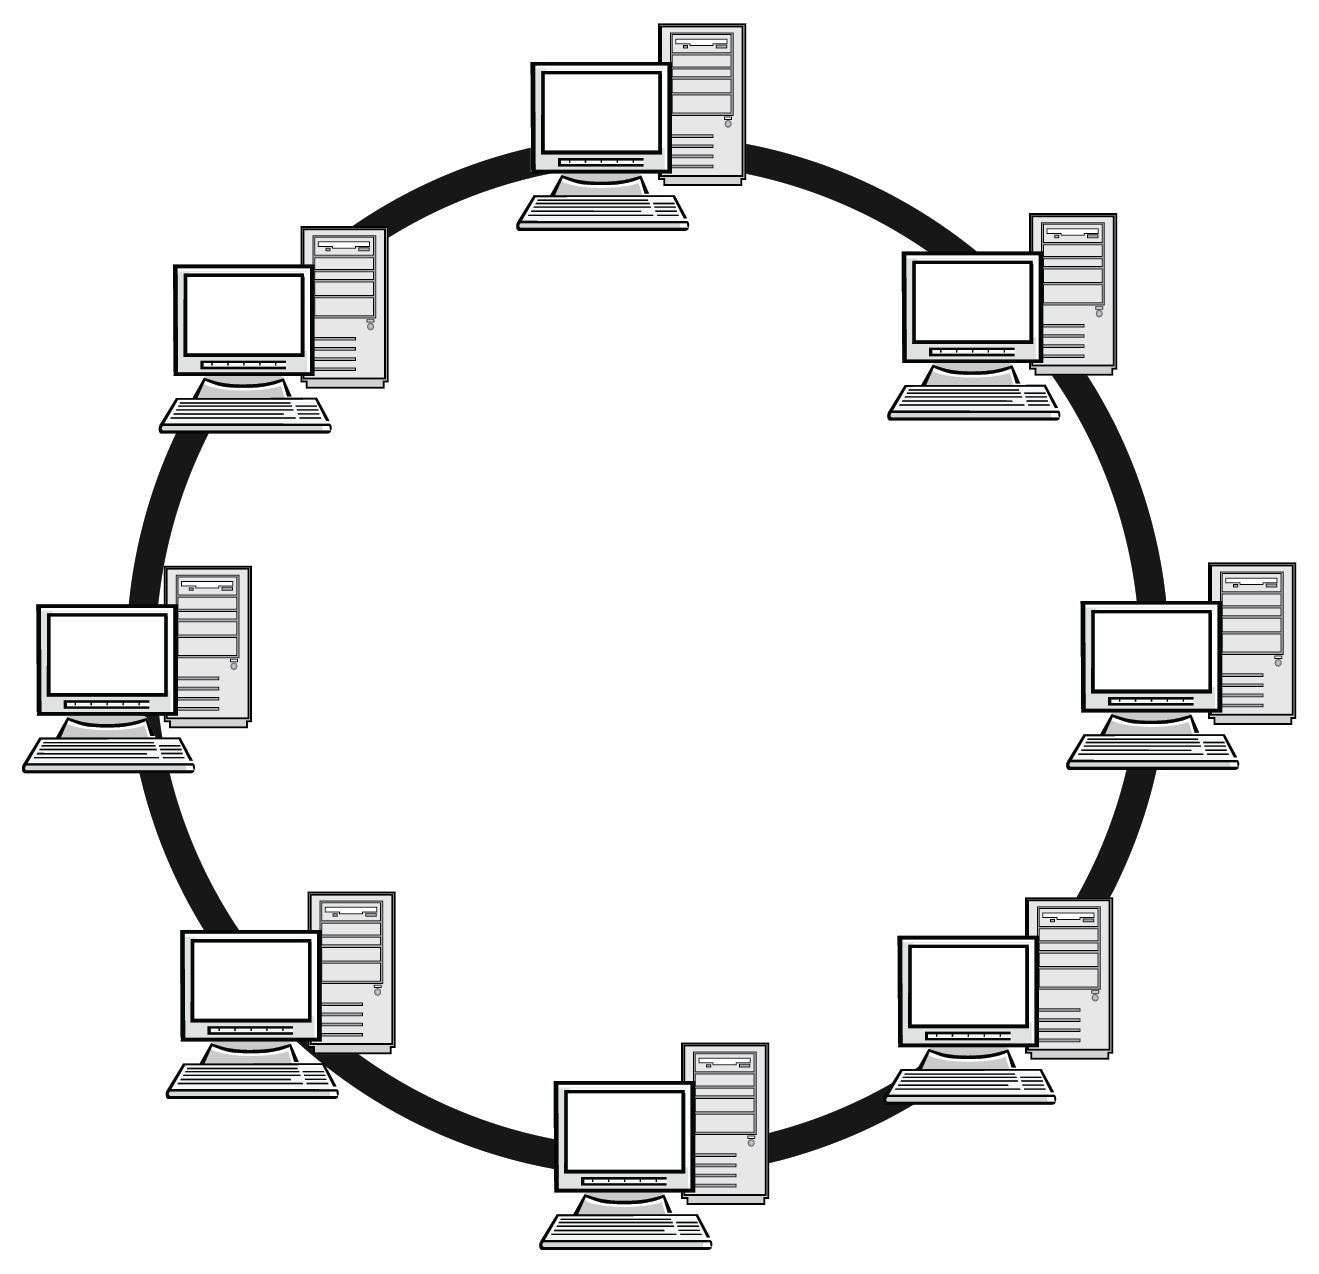 Кольцевое подключение. Топология локальных сетей кольцо. Кольцо (топология компьютерной сети). Топология сетей звезда кольцо шина. Схема топологии шина звезда кольцо.